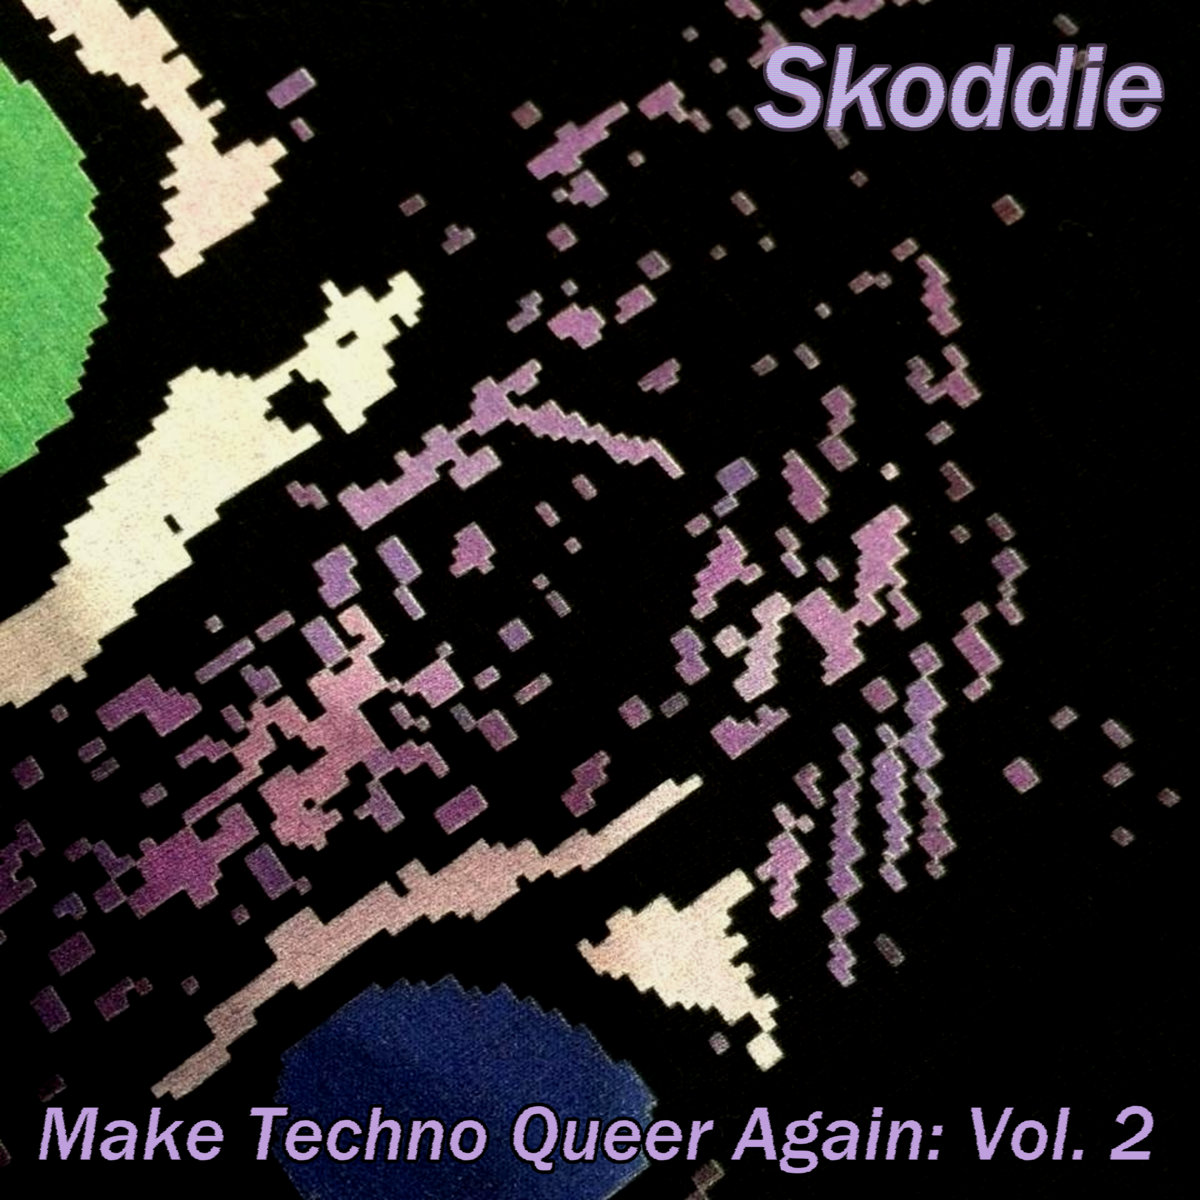 Make Techno Queer Again: Vol. 2